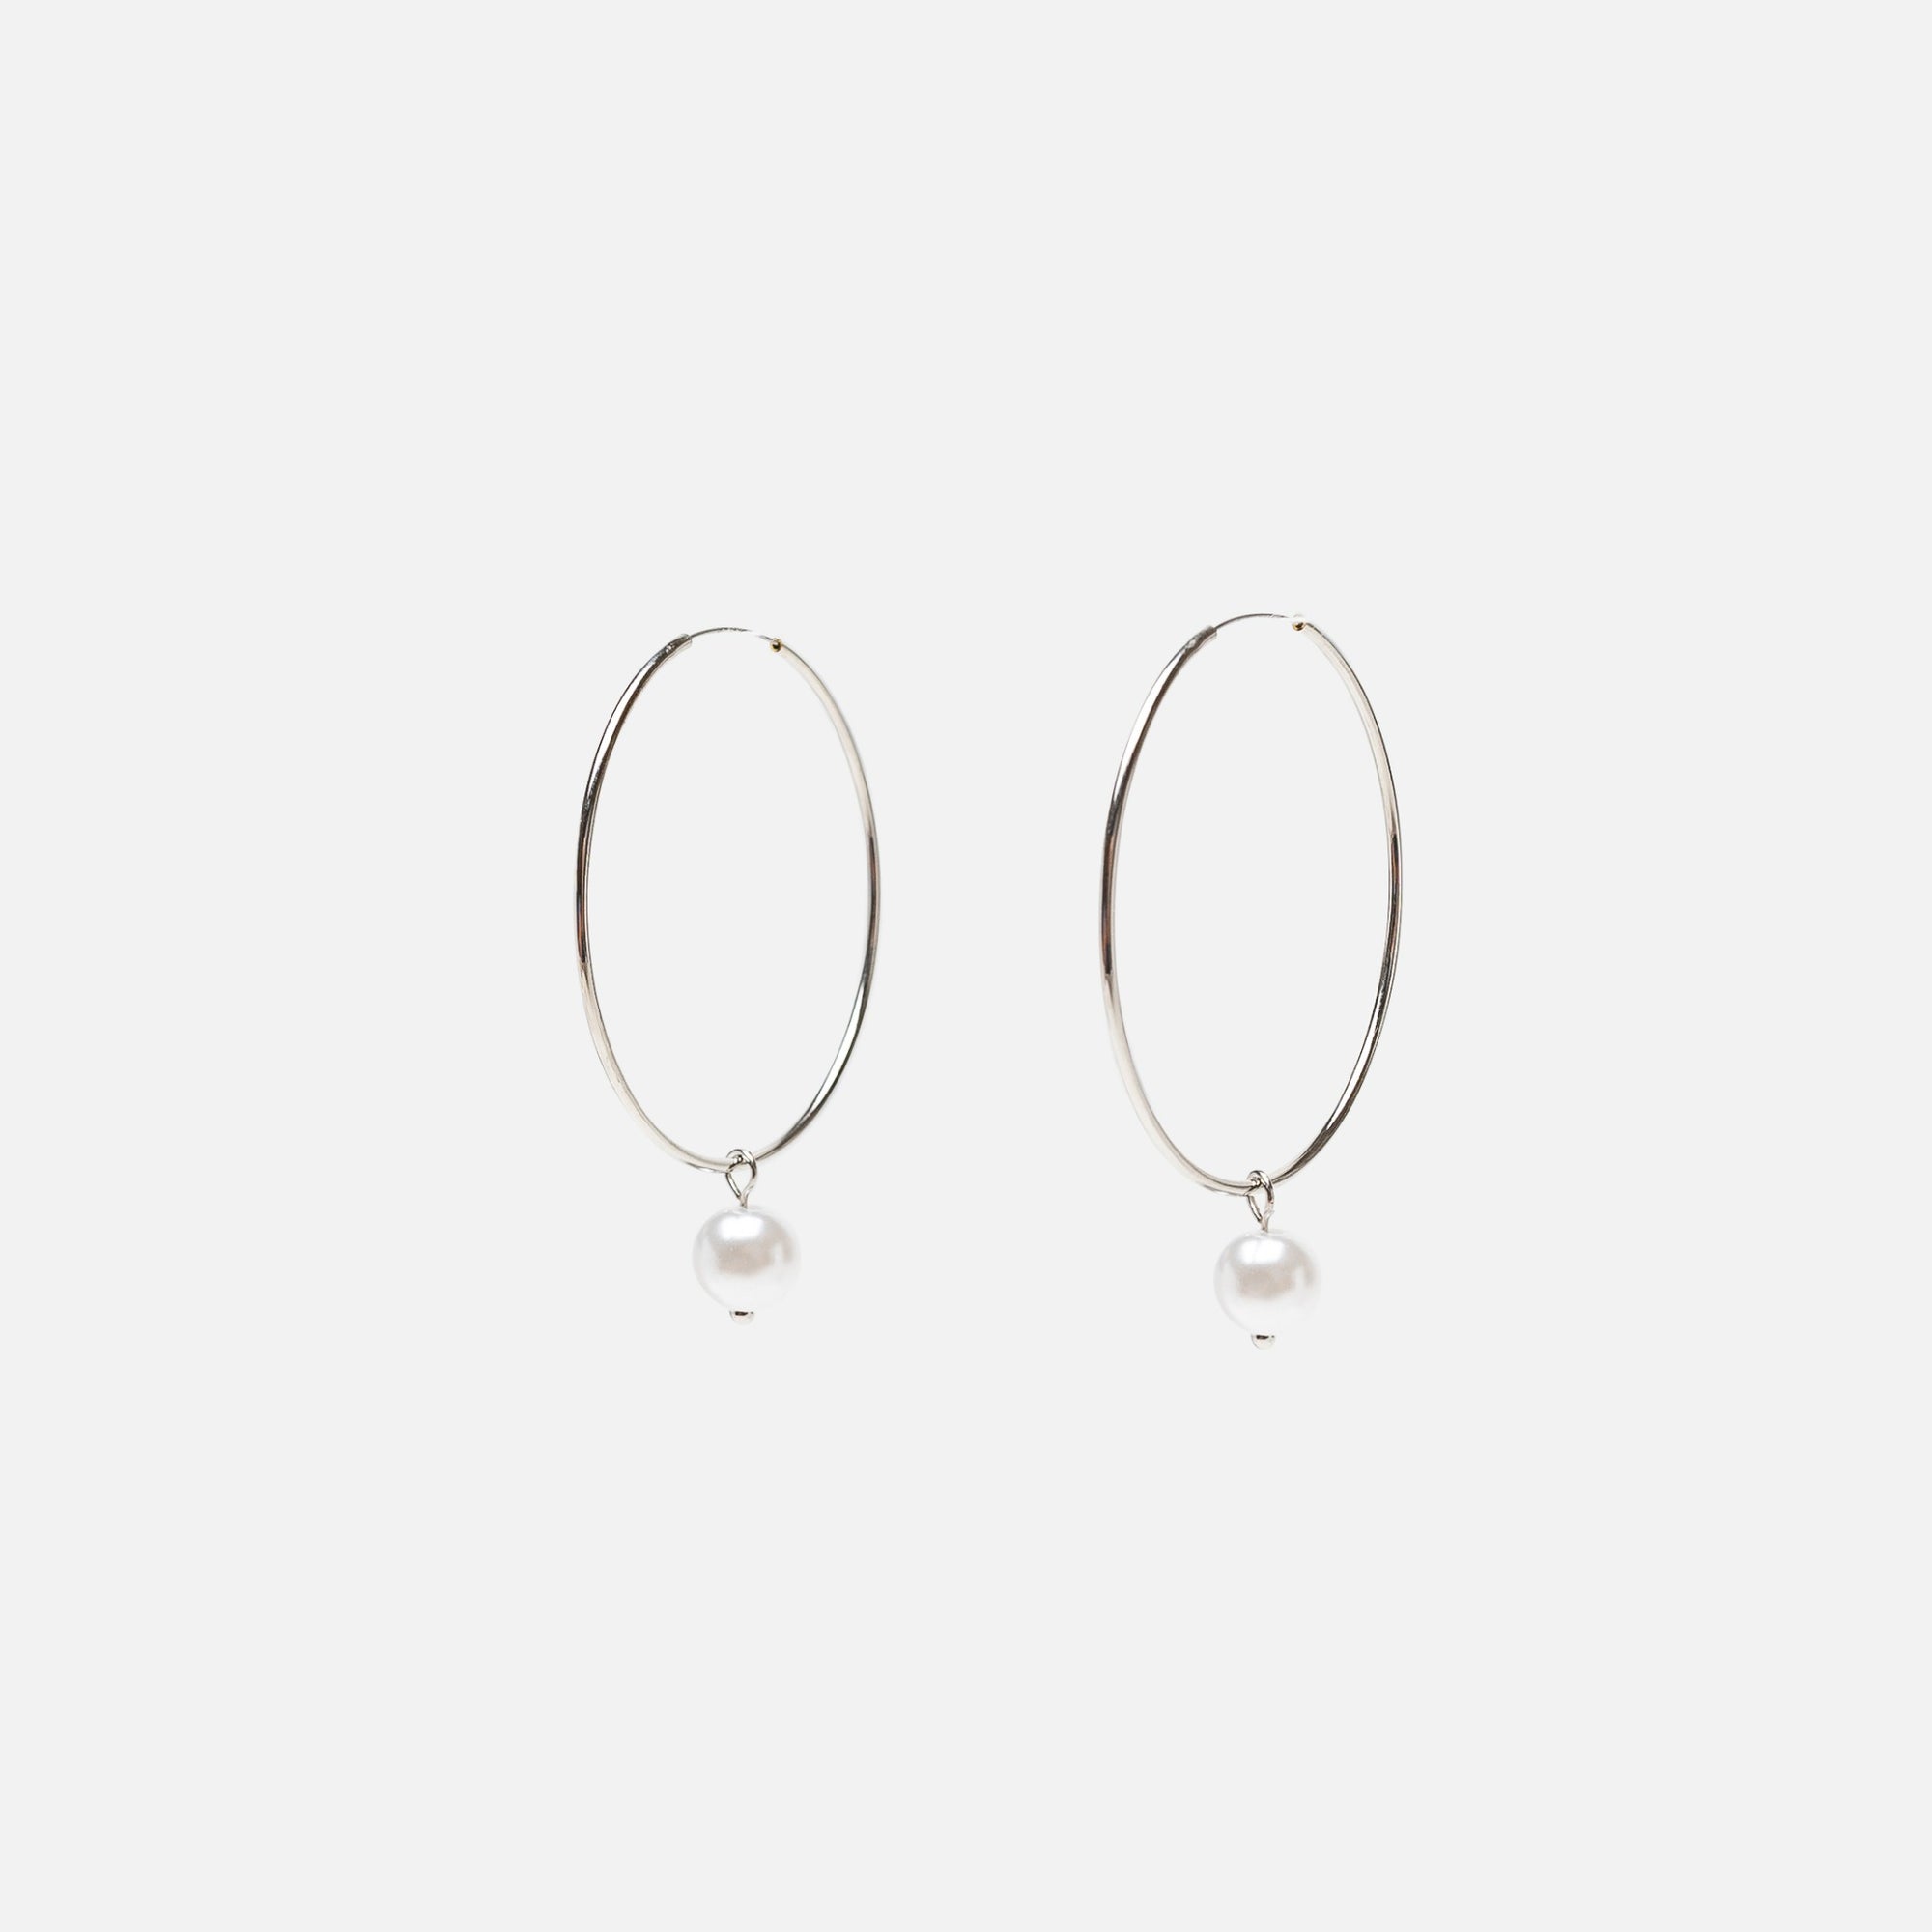 Silver hoop earrings with pearl charm 